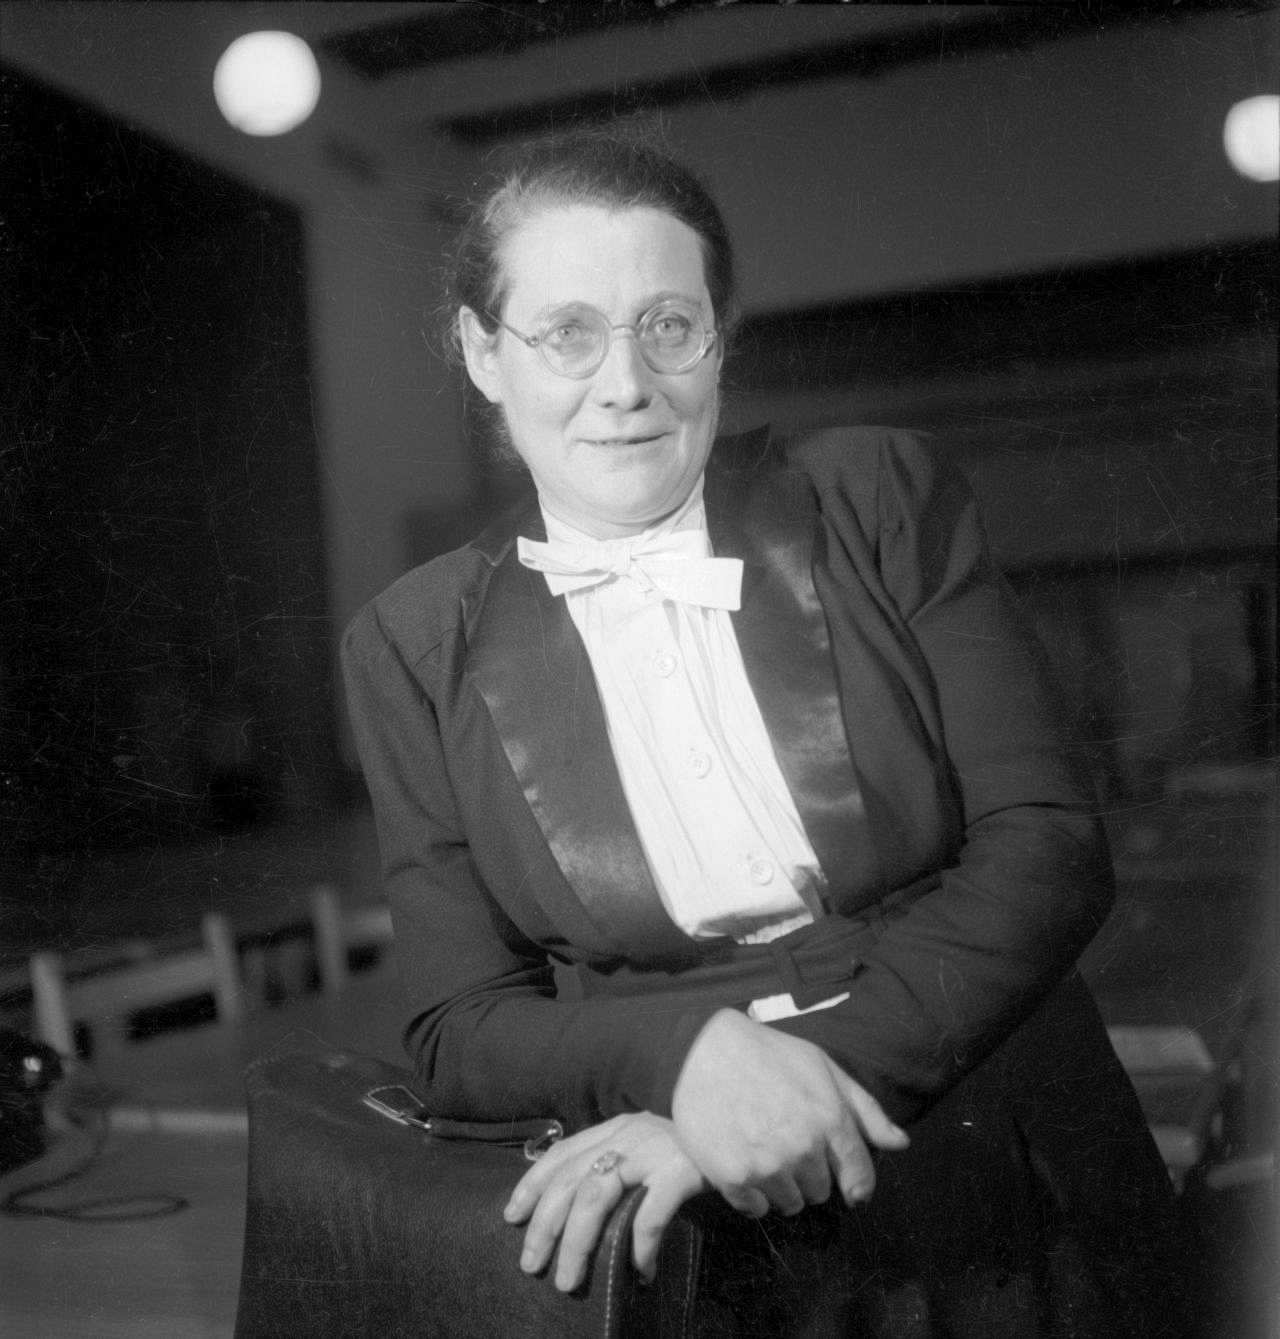 Porträtfotografie von Helene Wessel, Mitglied der Zentrumspartei und des Parlamentarischen Rates, 1948-49.